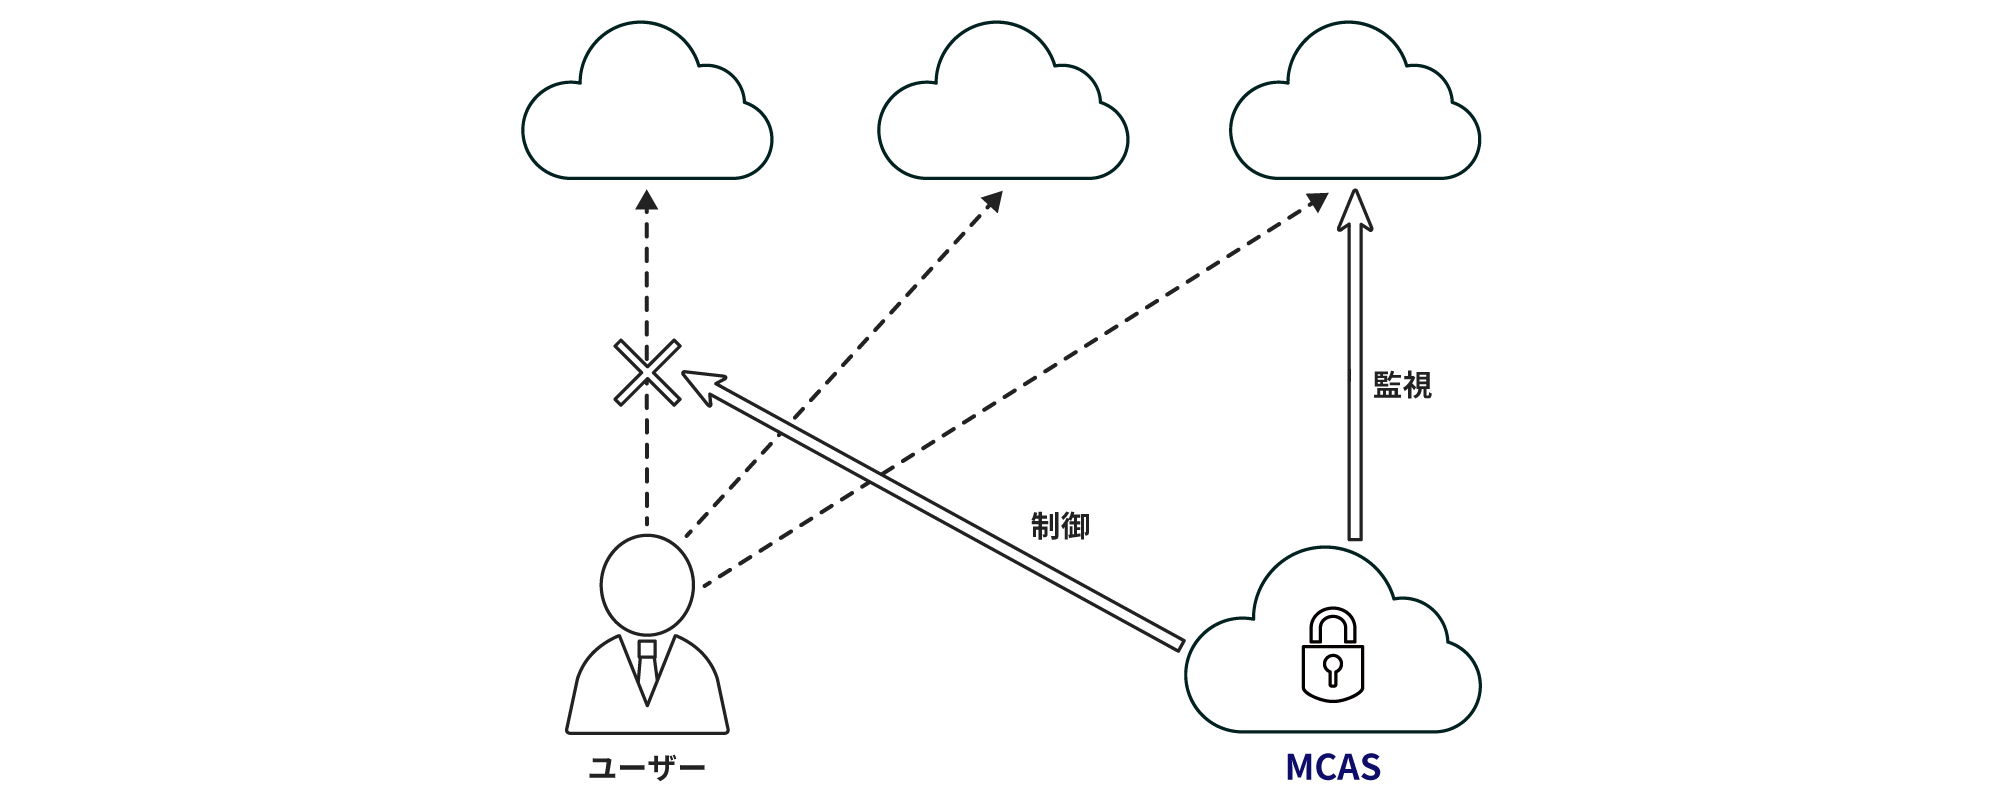 Microsoft Defender for Cloud Apps (MDCA)は3つの機能でクラウドアプリ環境を保護、異常な動作やユーザーアクティビティの監視、ユーザーのログインやアクティビティの制御が可能